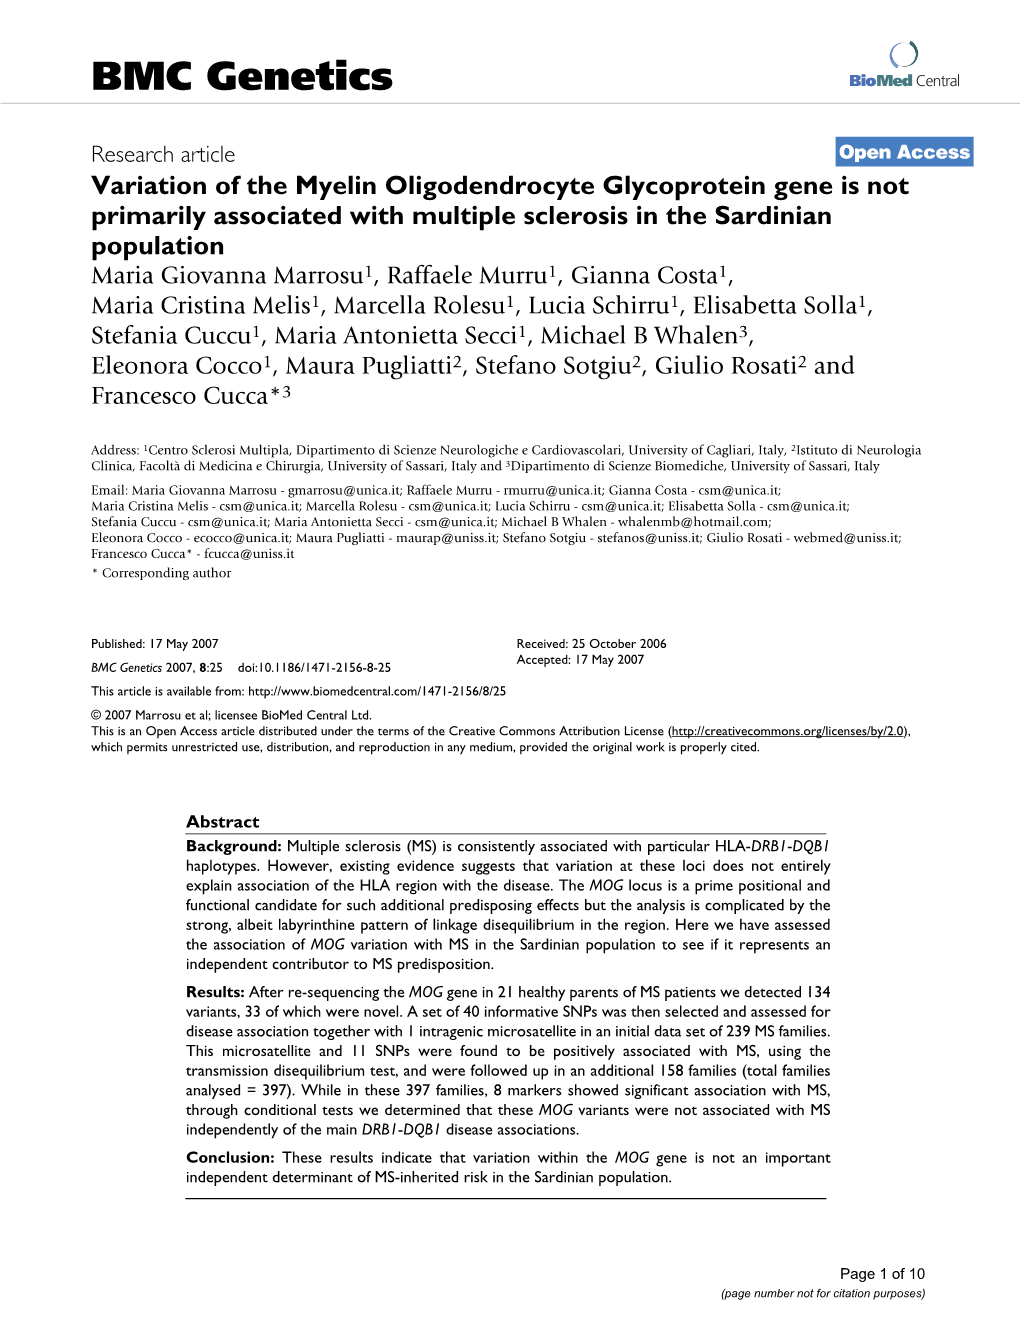 Variation of the Myelin Oligodendrocyte Glycoprotein Gene